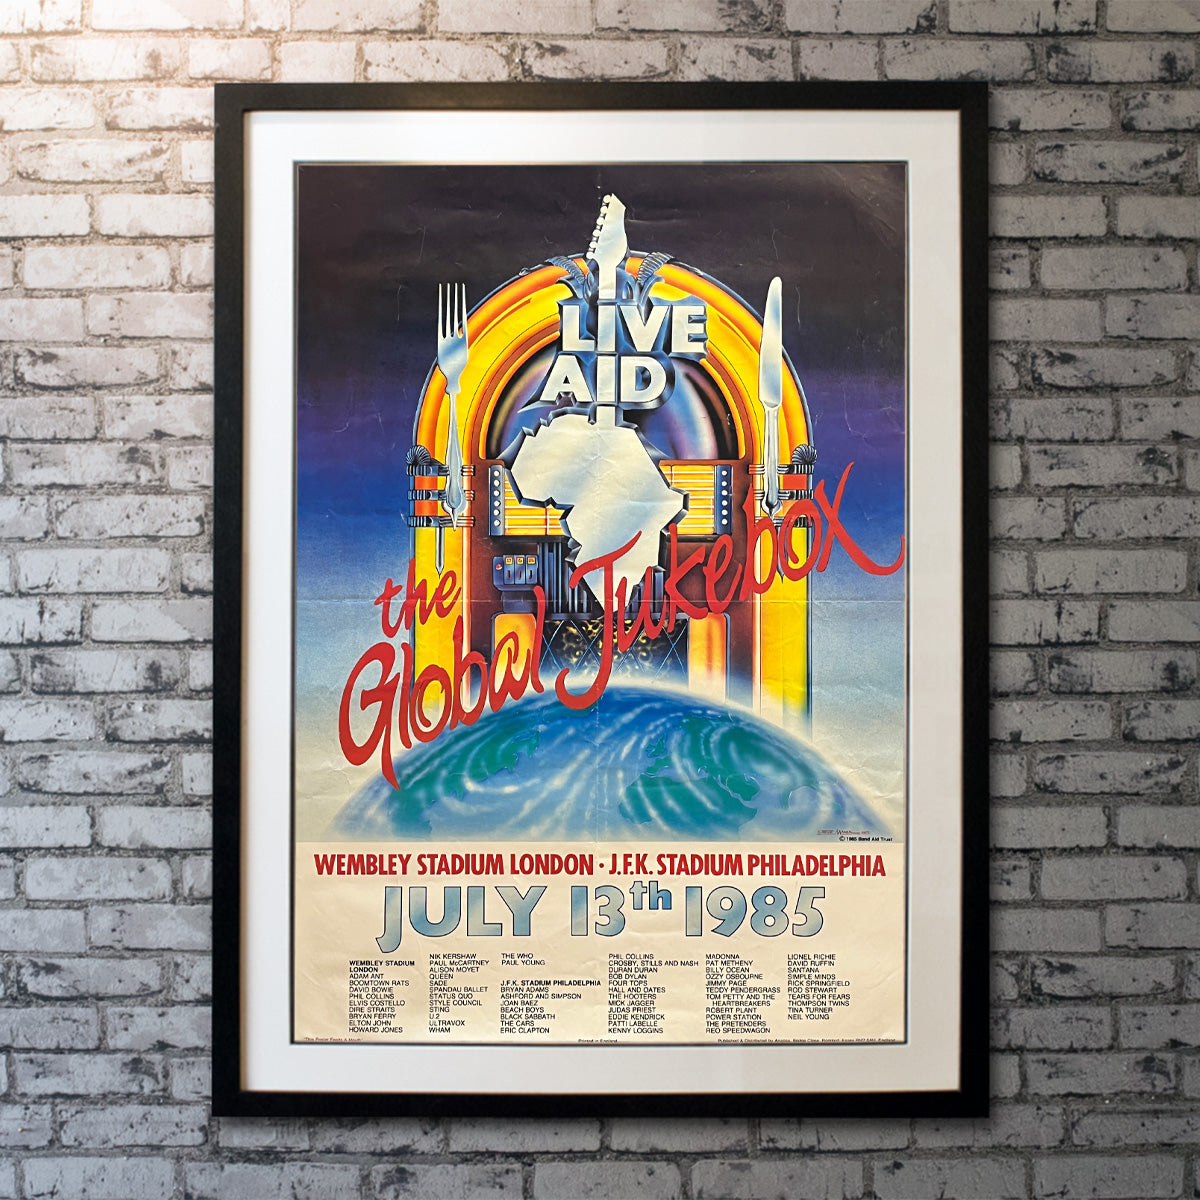 Live Aid: The Global Jukebox (1985)